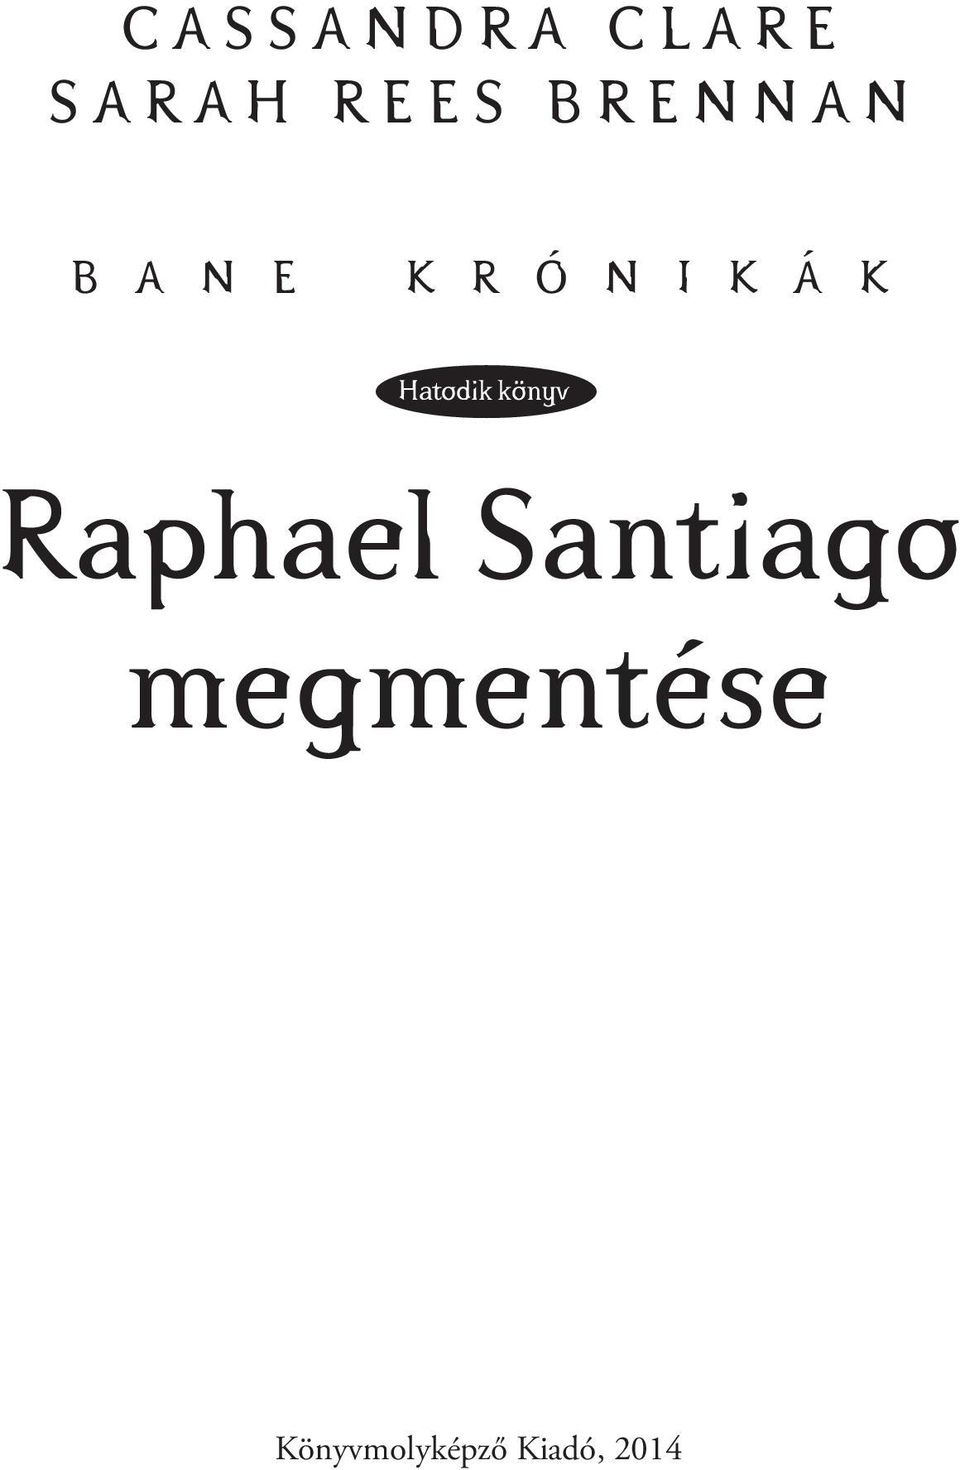 K R Ó N I K Á K Hatodik könyv Raphael